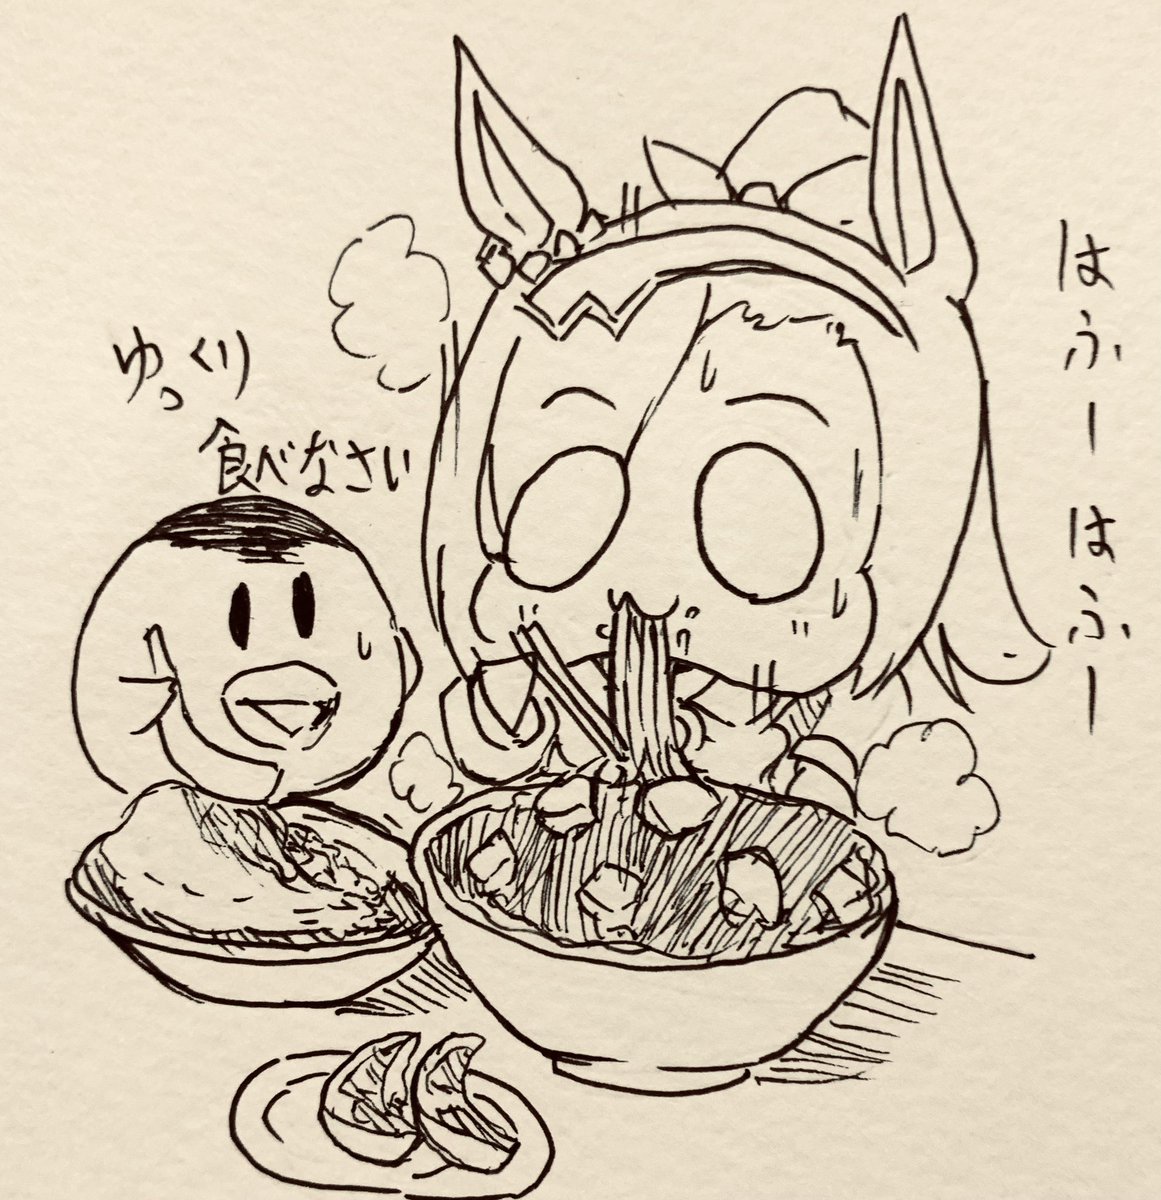 こがらさんがとても美味しそうな麻婆麺食べてたのでその様子を描きました(?)